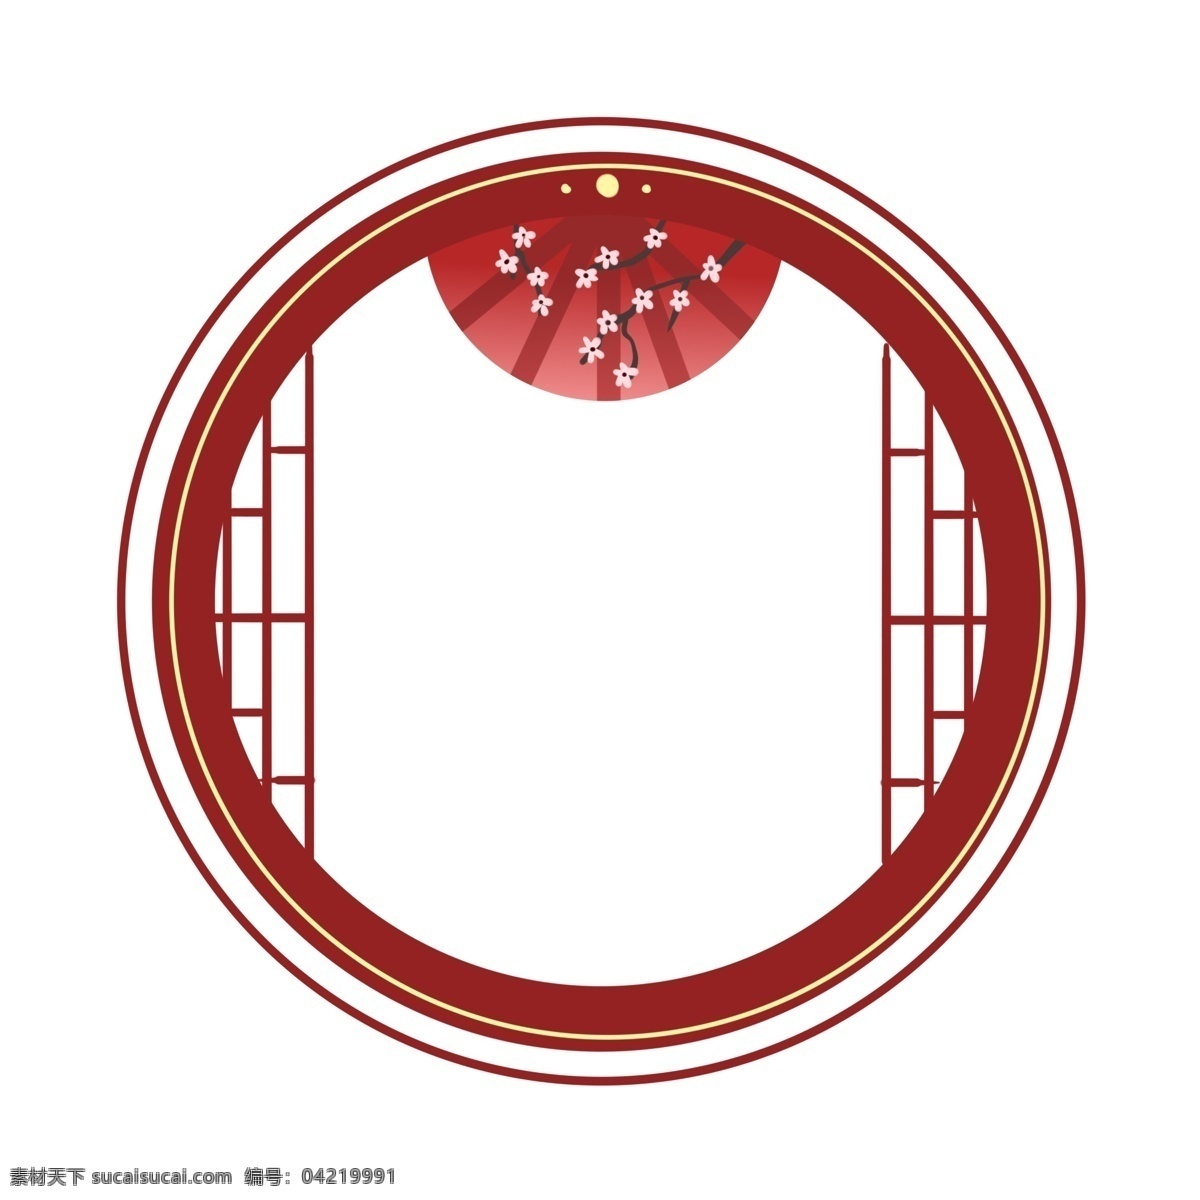 折扇 红色 中 国风 边框 中国风边框 圆形边框 新年 热闹 扇子 梅花图案 中国线条屏风 喜气洋洋